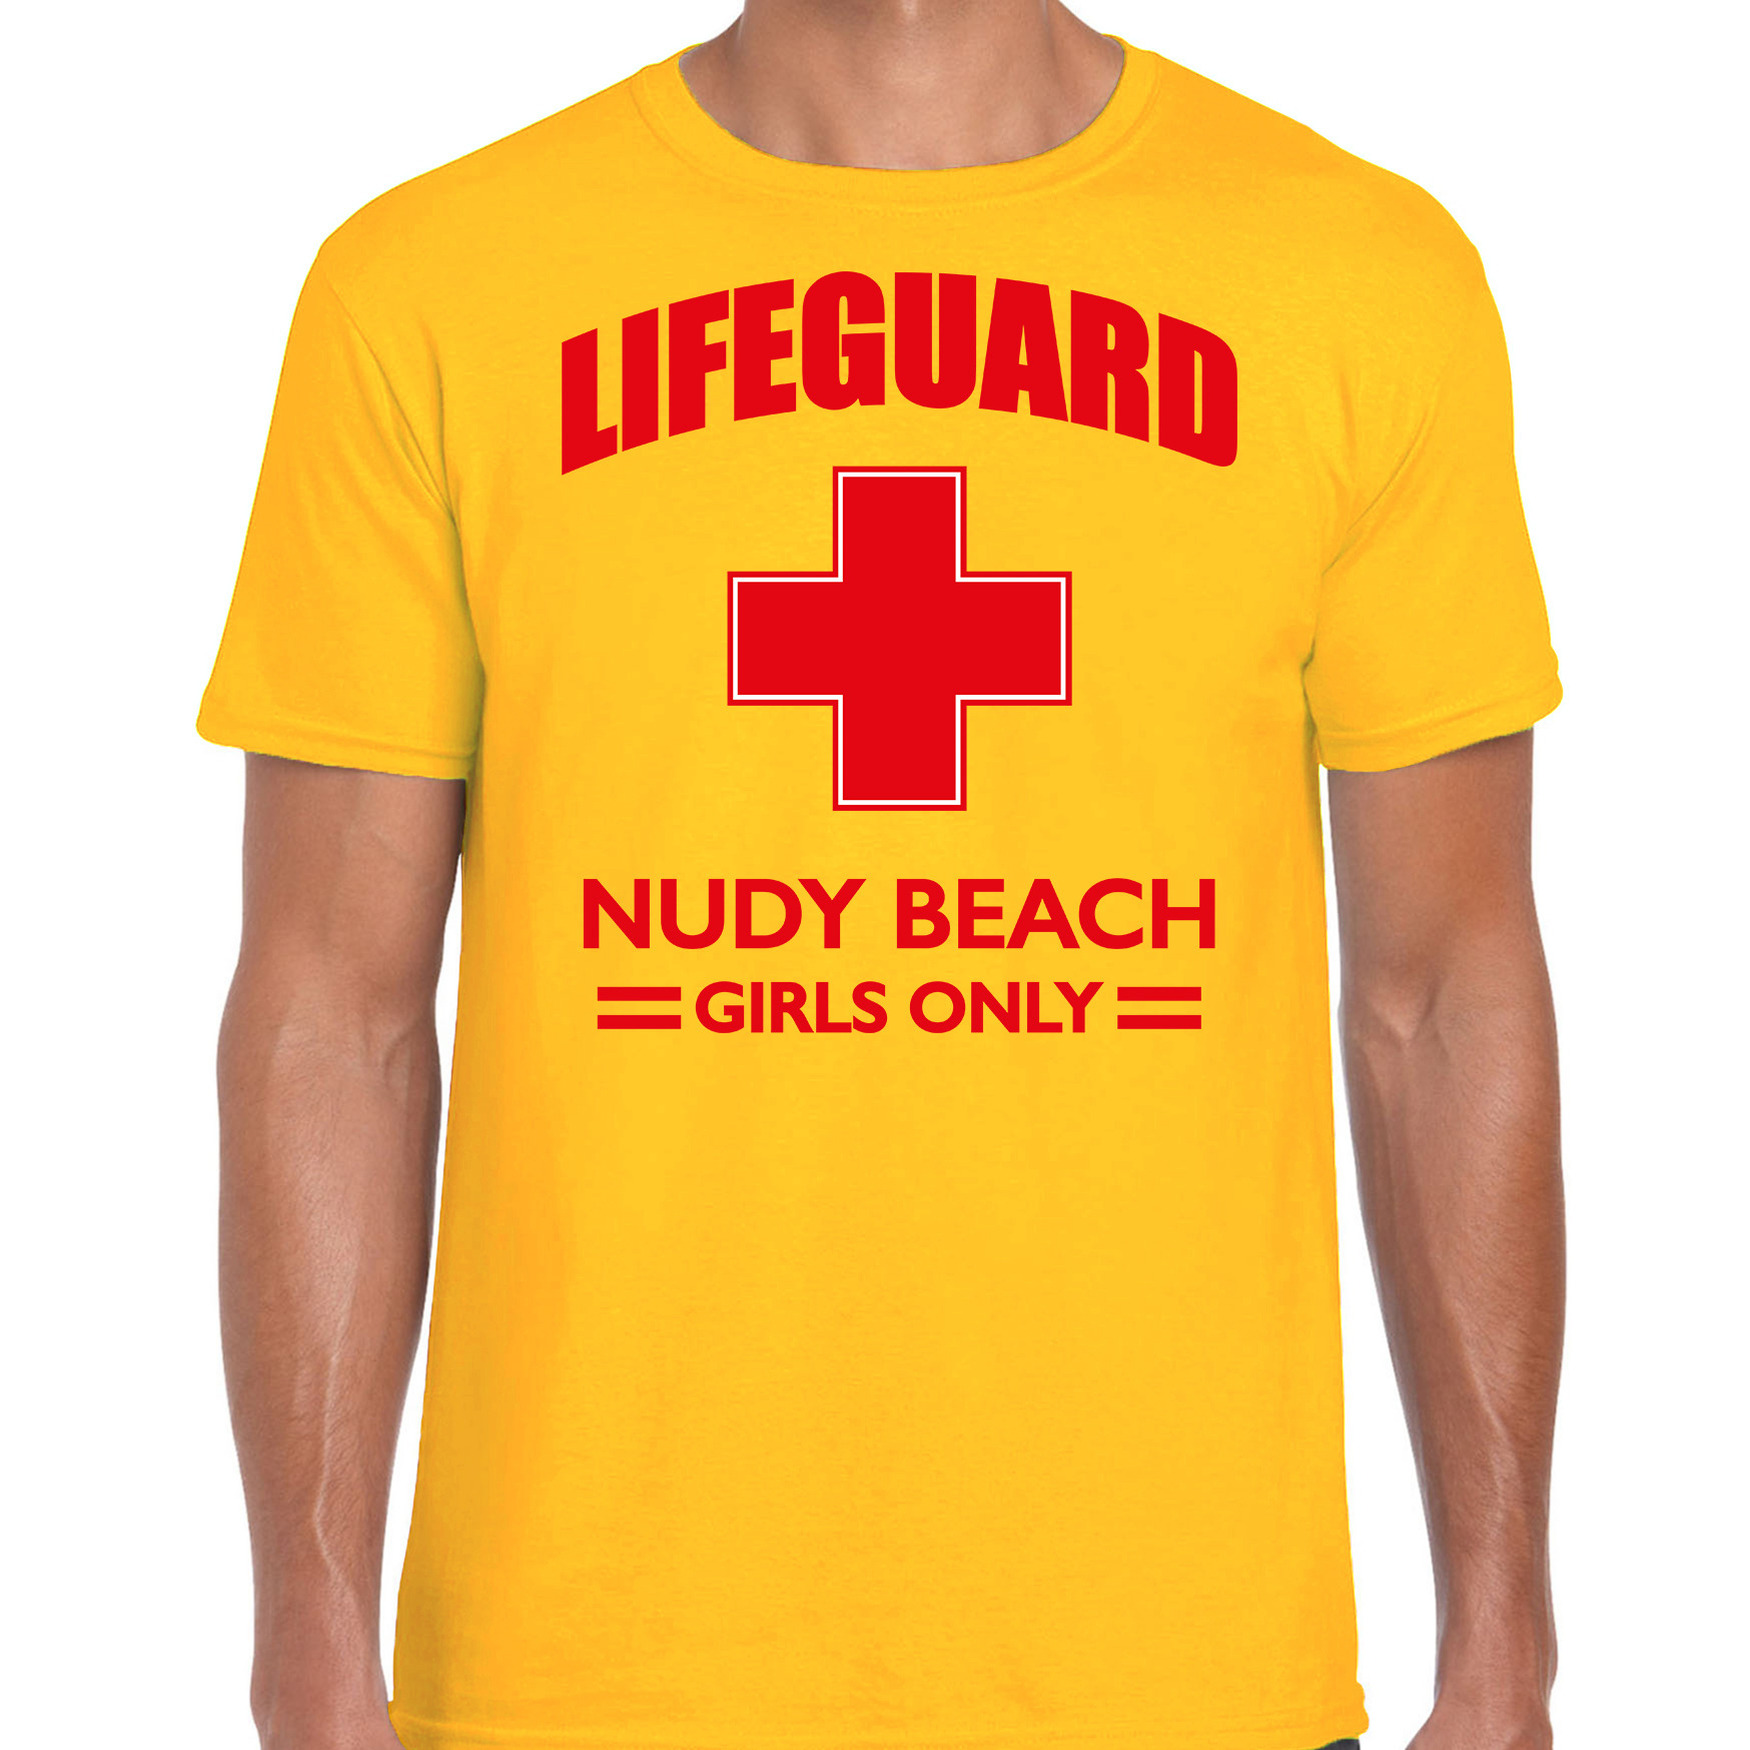 Reddingsbrigade-lifeguard Nudy Beach girls only t-shirt geel-voor bedrukking heren